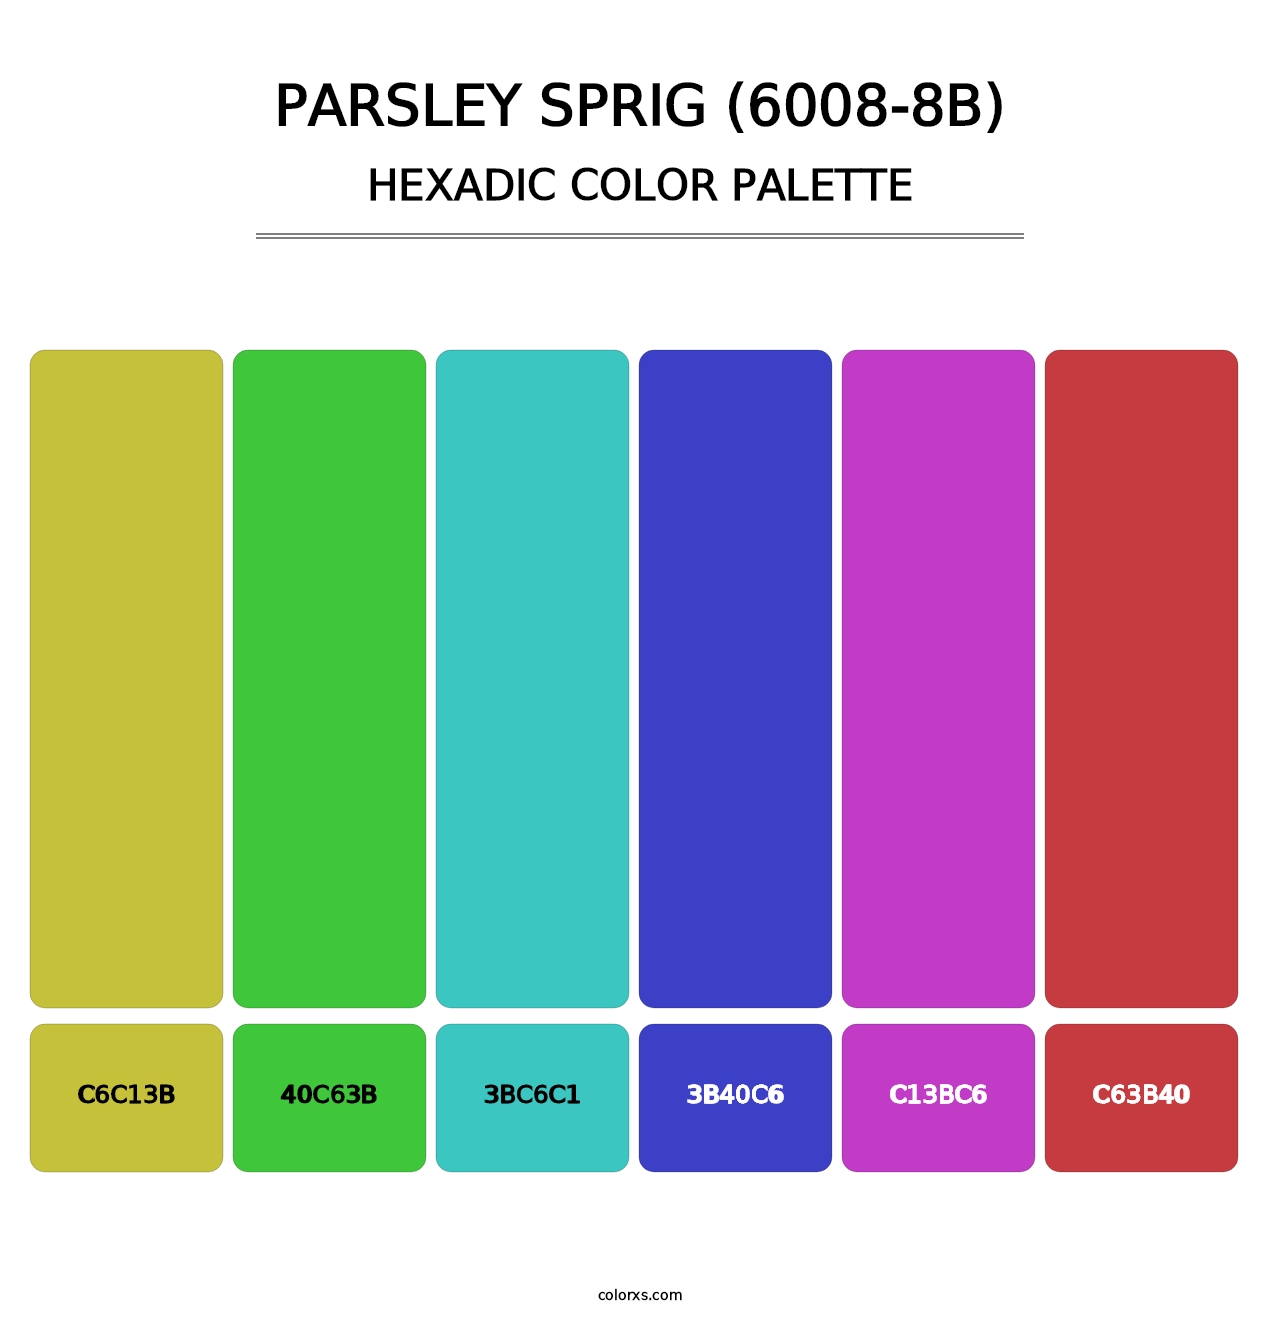 Parsley Sprig (6008-8B) - Hexadic Color Palette